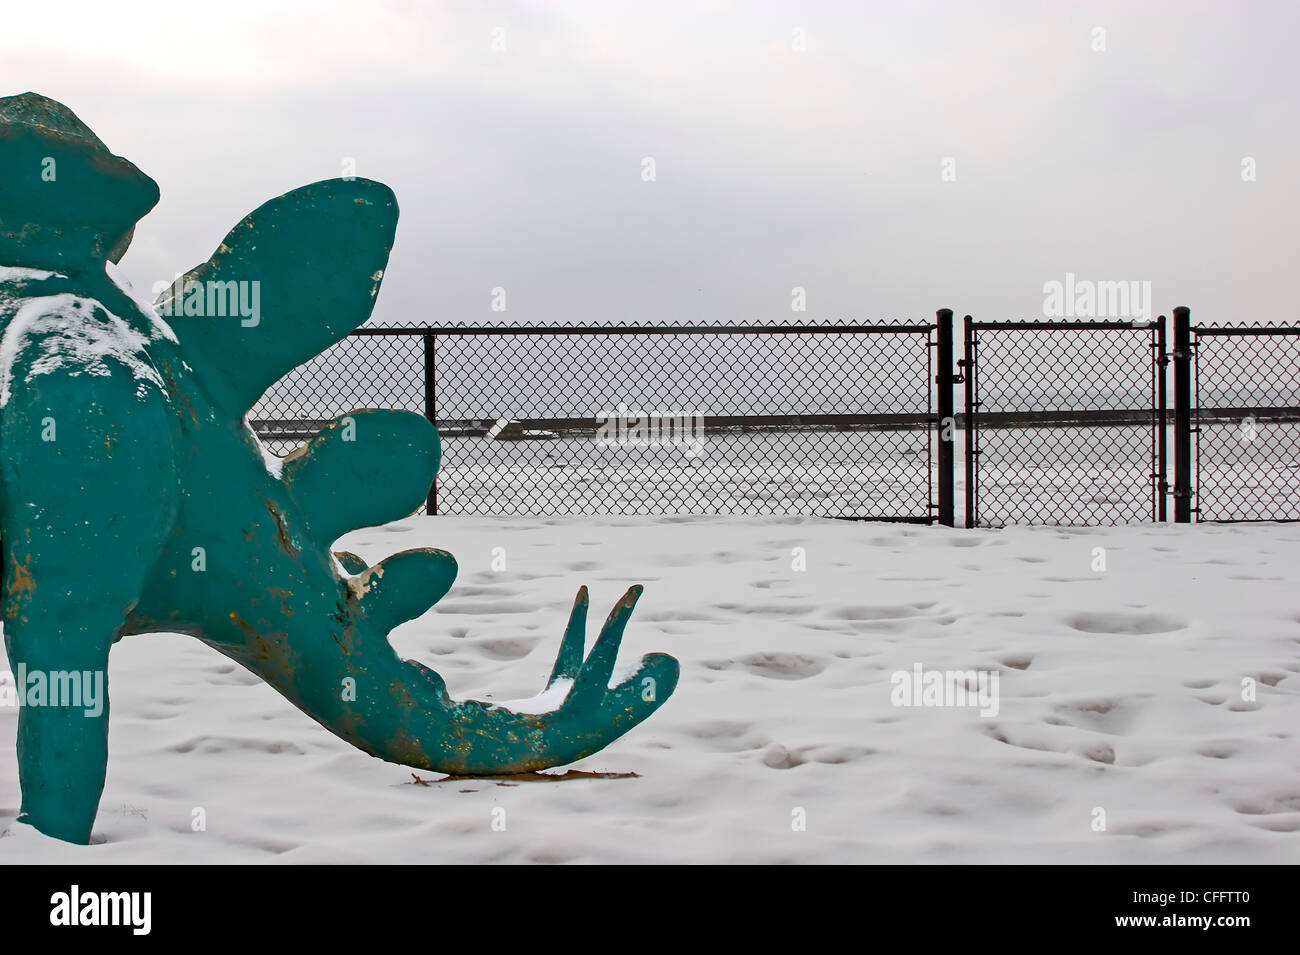 Dinosaur Tail in Snow, Sunnyside Beach, Toronto, Ontario Stock Photo